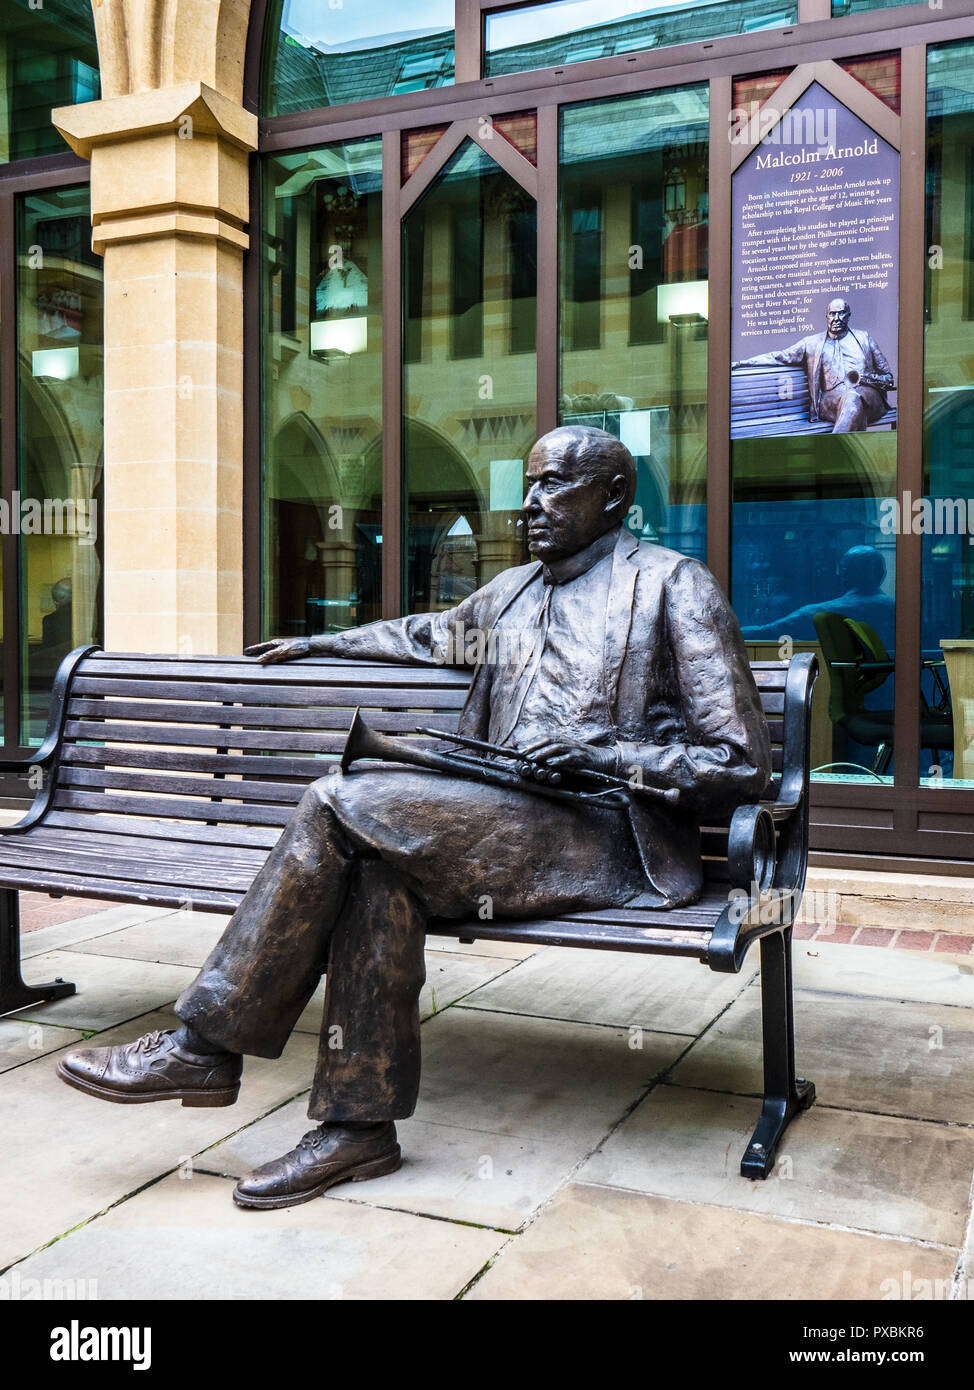 Malcolm Arnold statua - Statua di theNorthampton compositore nato a Northampton Guildhall - scultore Richard Austin Foto Stock